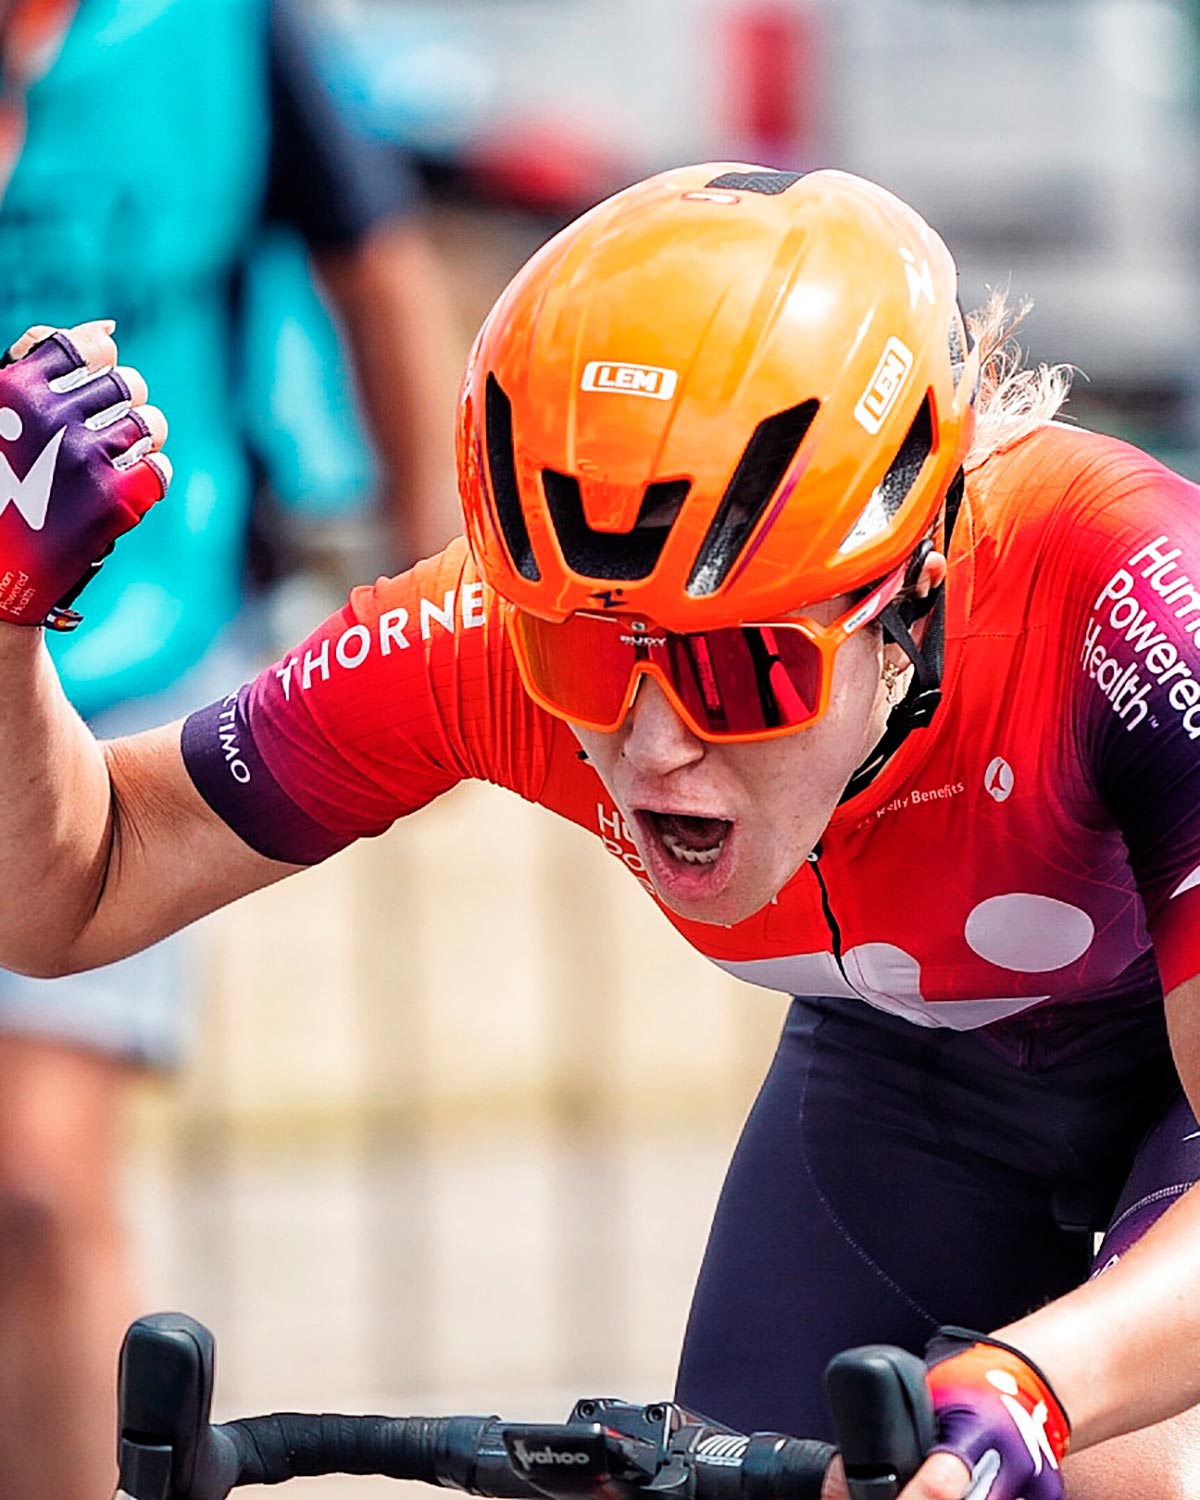 El Tour Down Under Femenino 2023 arranca con Daria Pikulik como primera líder